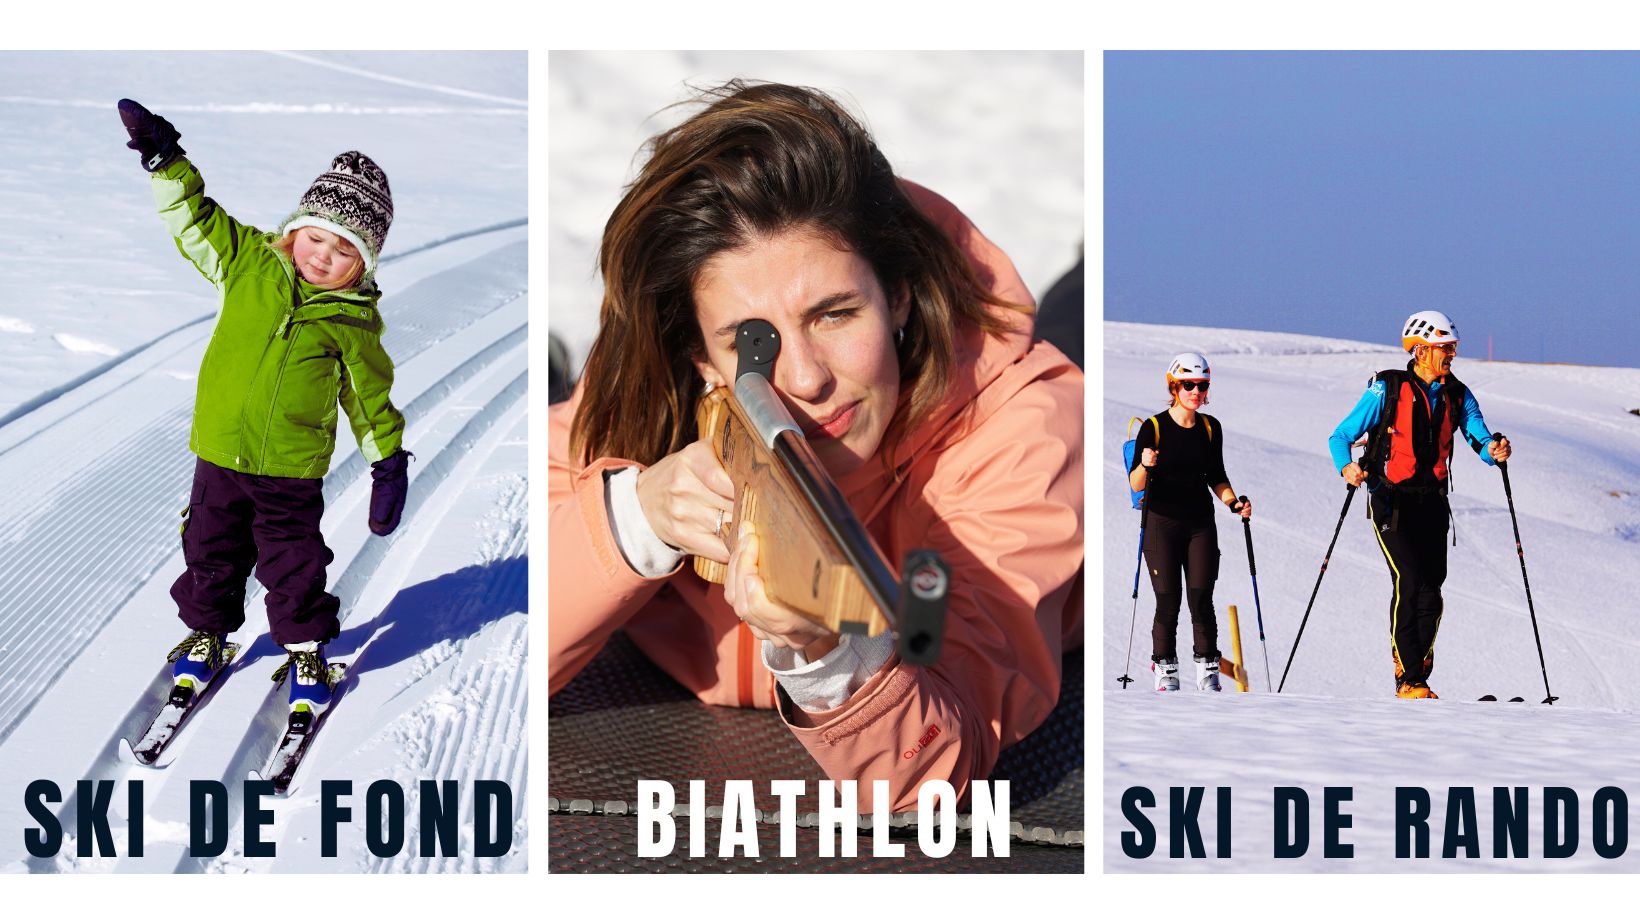 Découvrez le biathlon, le ski de fond et le ski de randonnée !